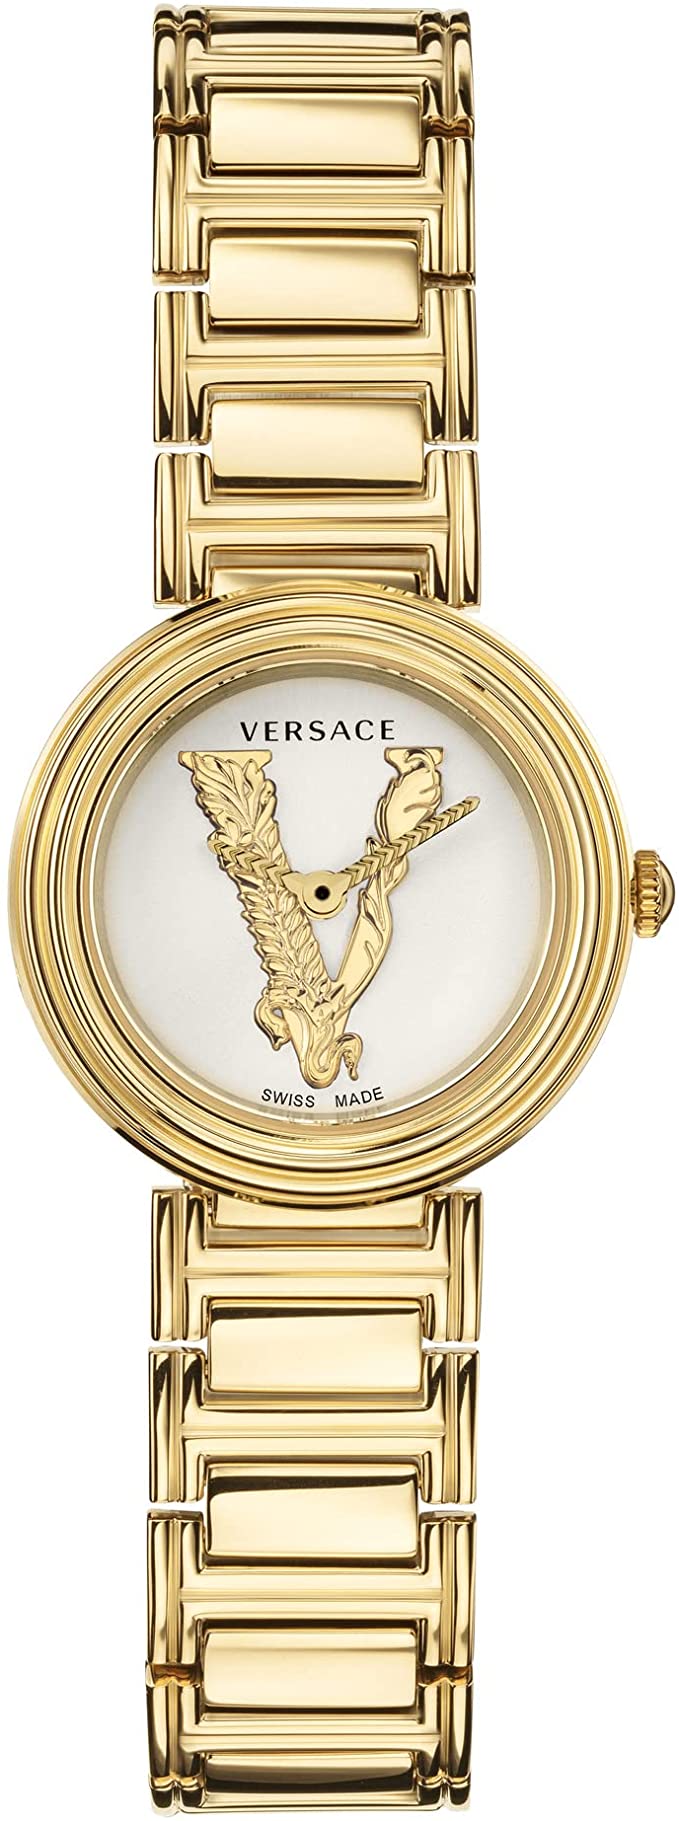 VERSACE ヴェルサーチェ 腕時計 レディース VET300221